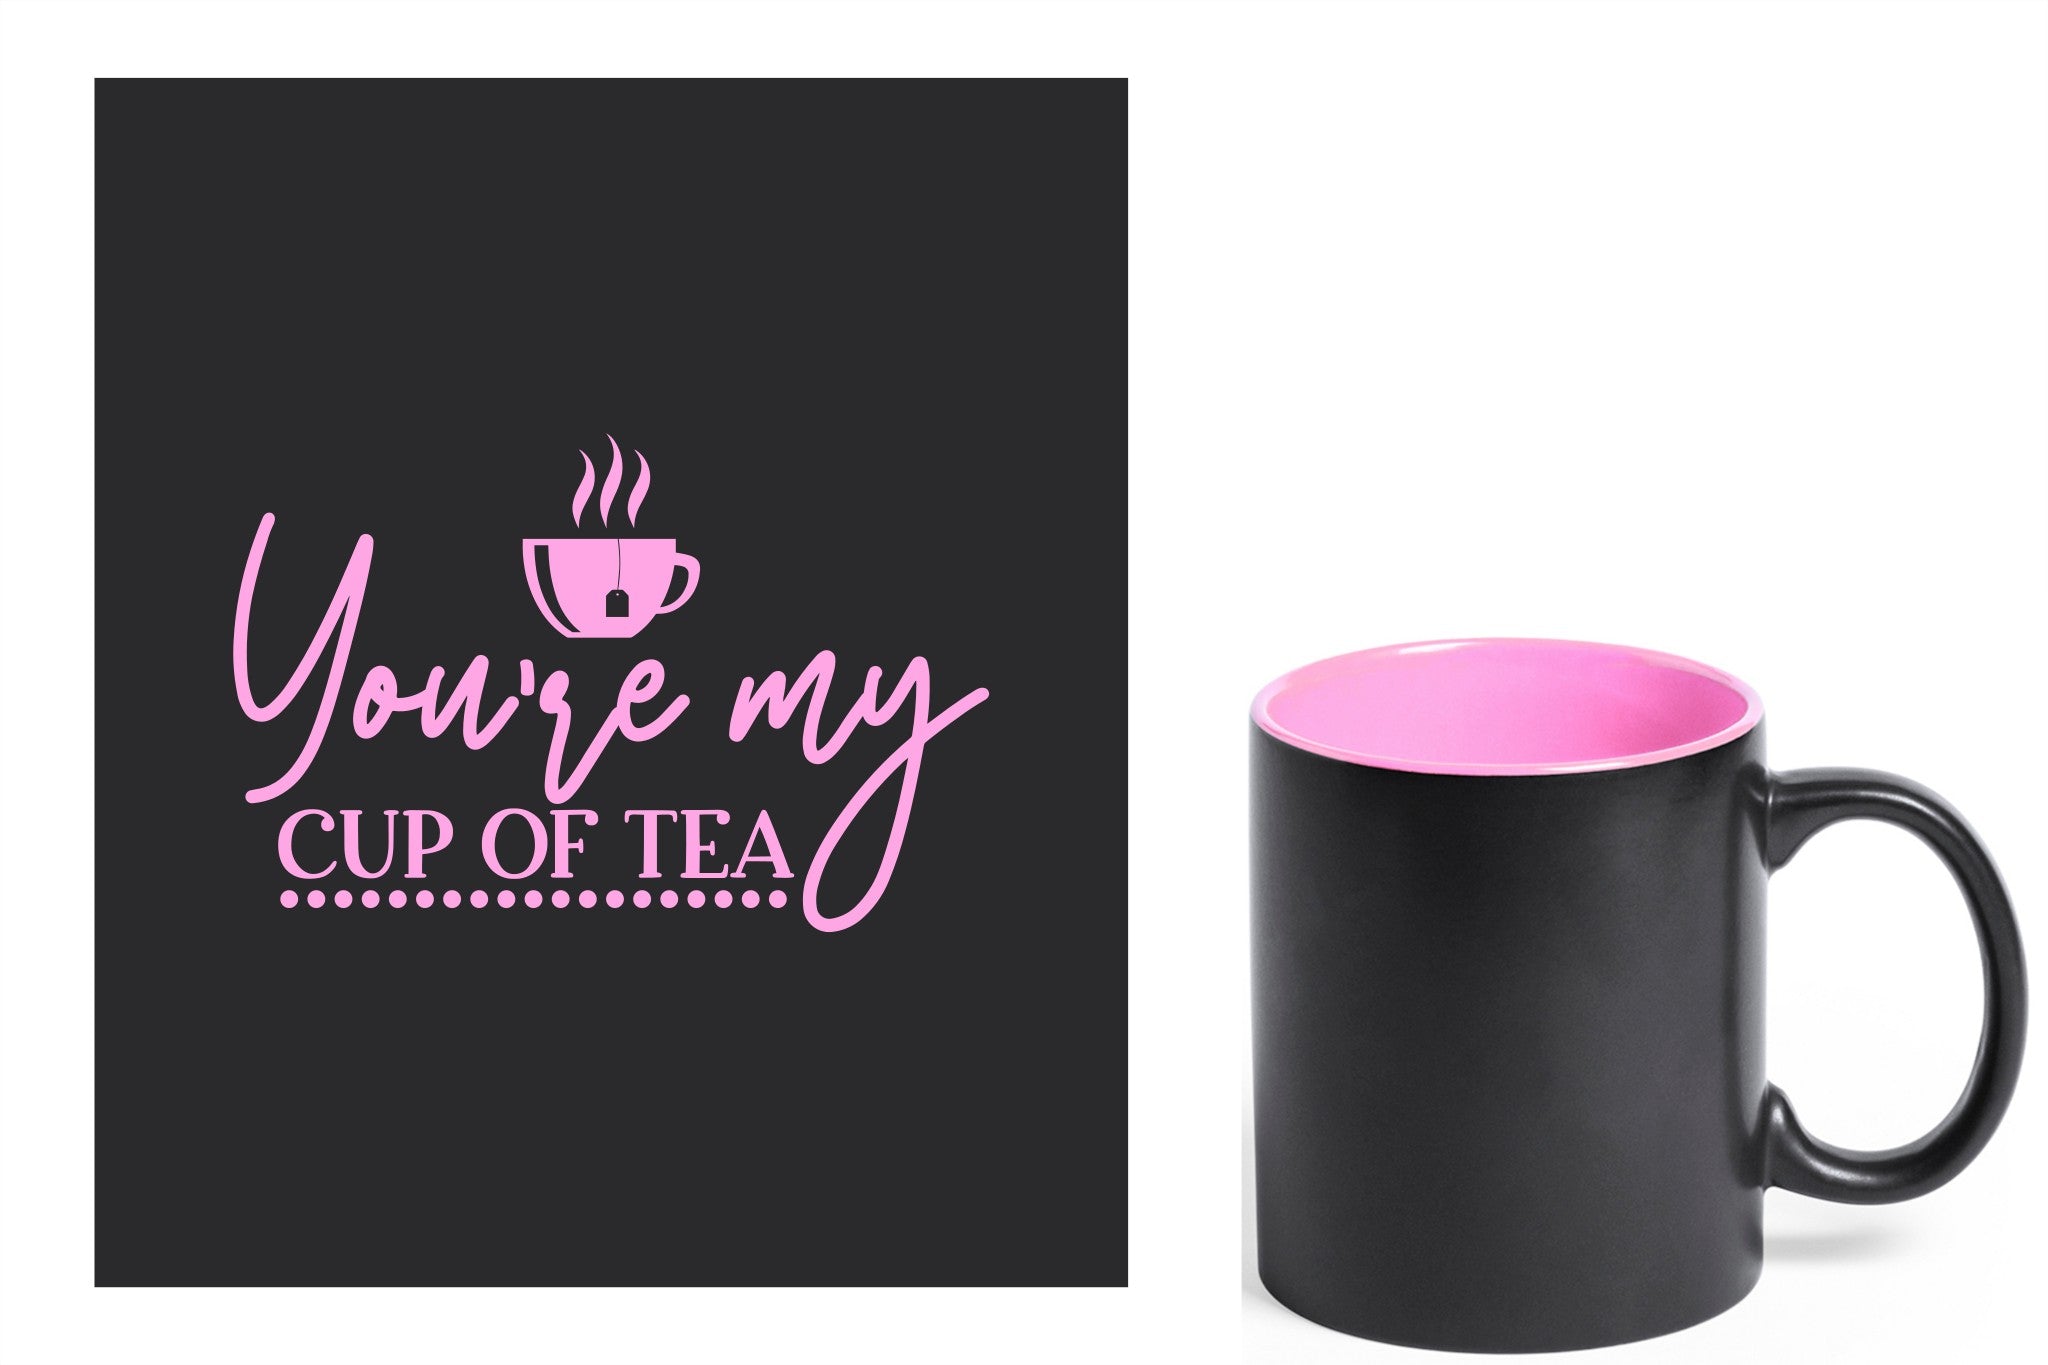 zwarte keramische mok met roze gravure  'You're my cup of tea'.